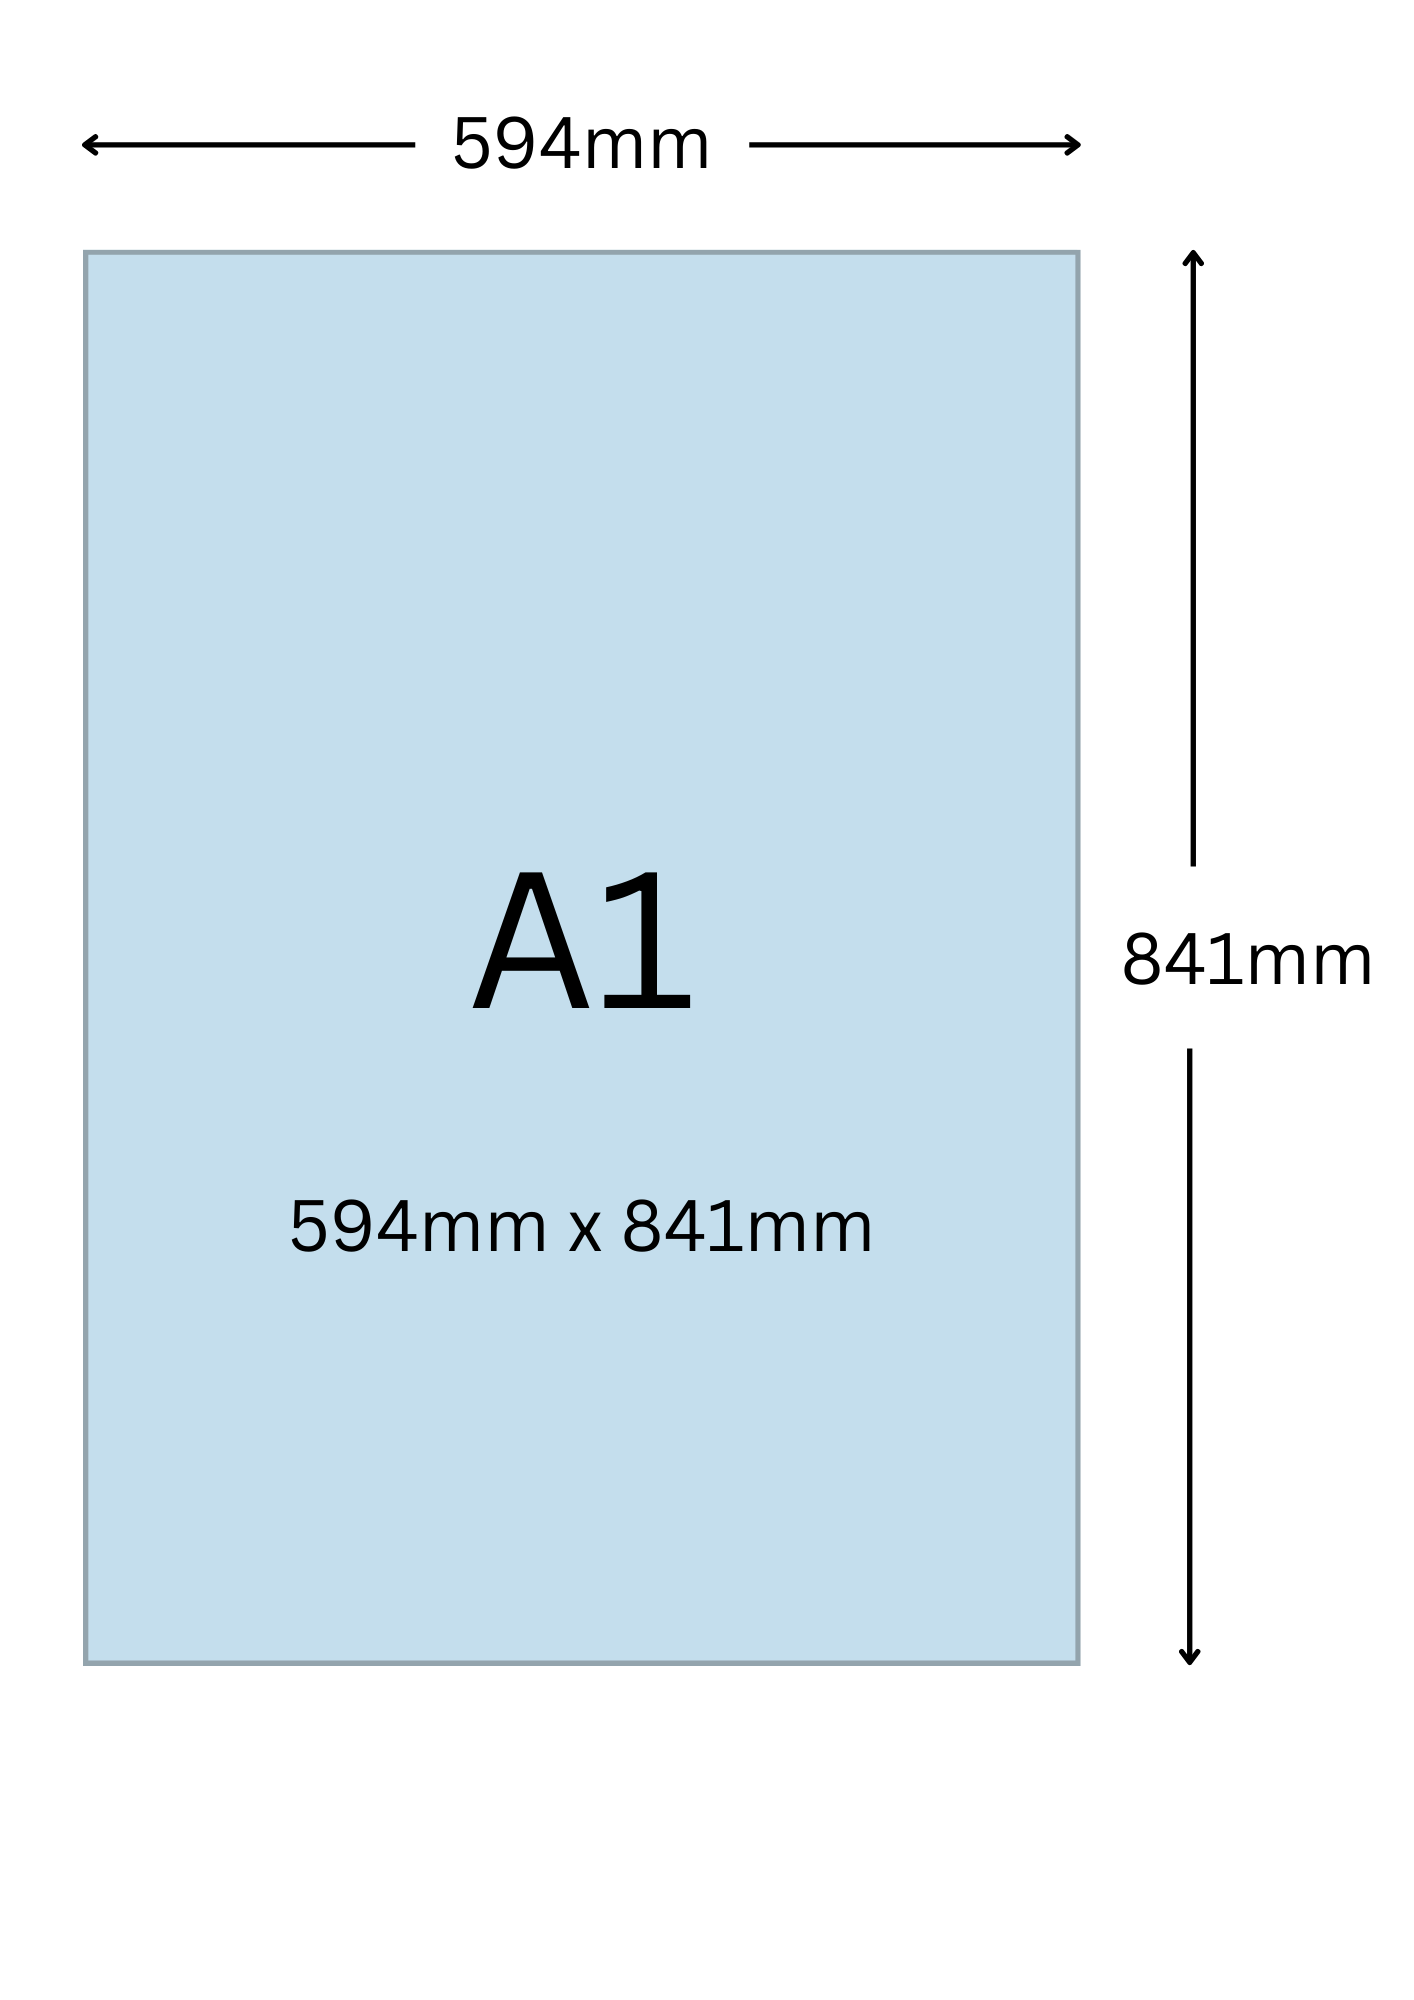 A1尺寸公分, A1紙張尺寸大小, A1紙張對應開數是幾開